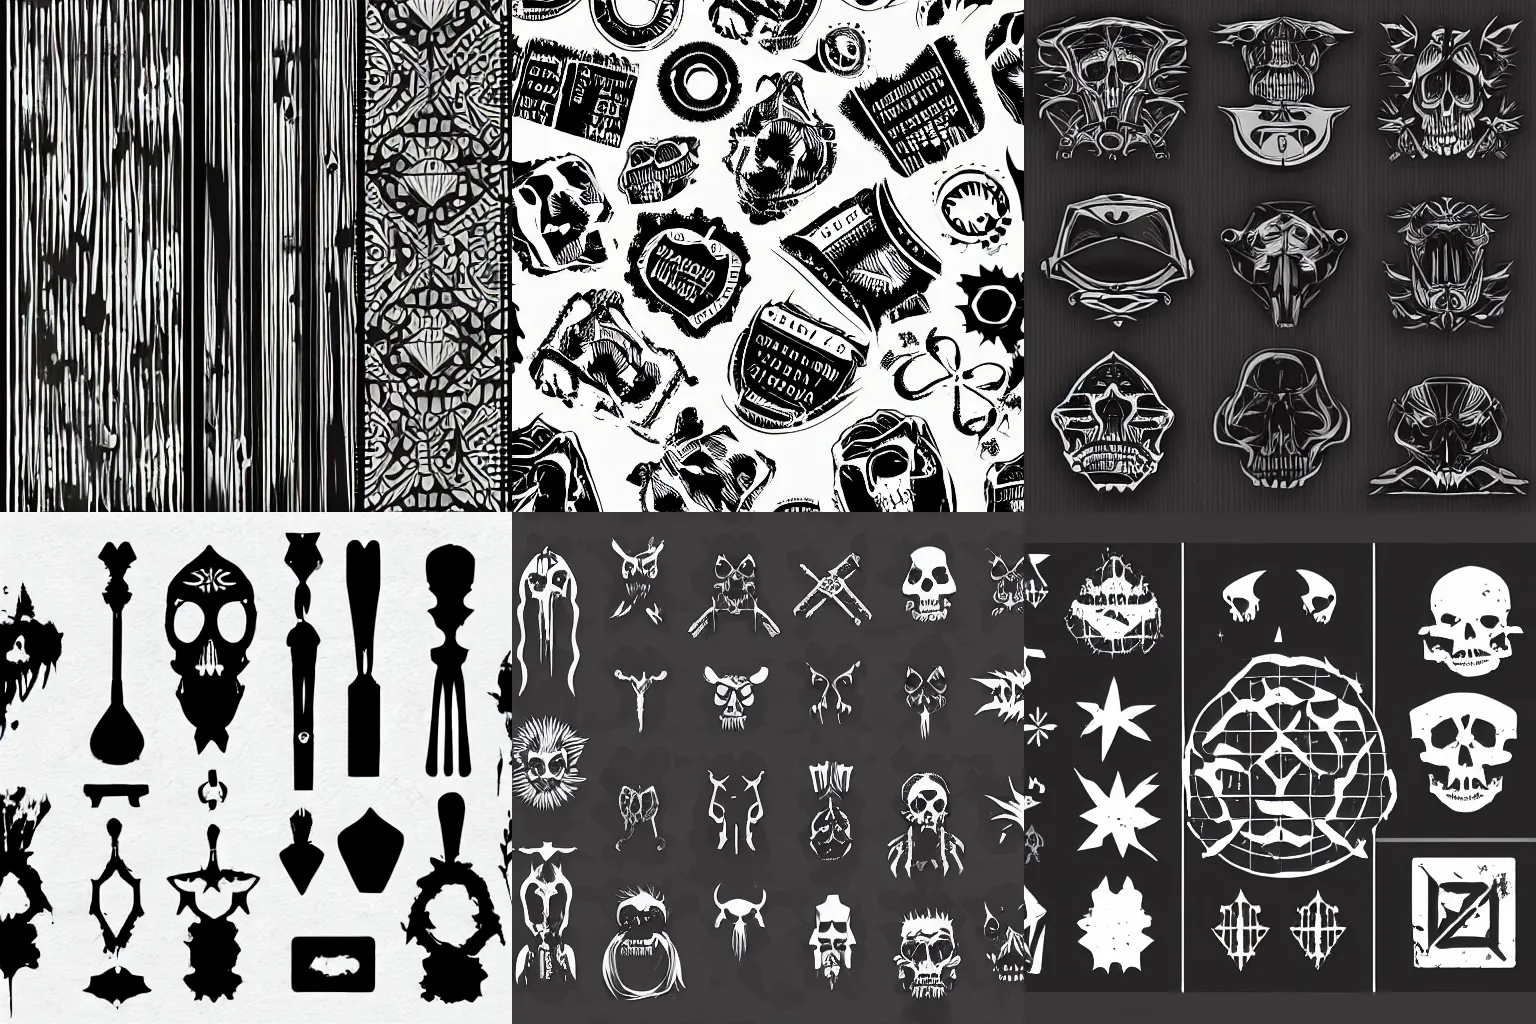 Prompt: digital grunge black sculls vector asset pack